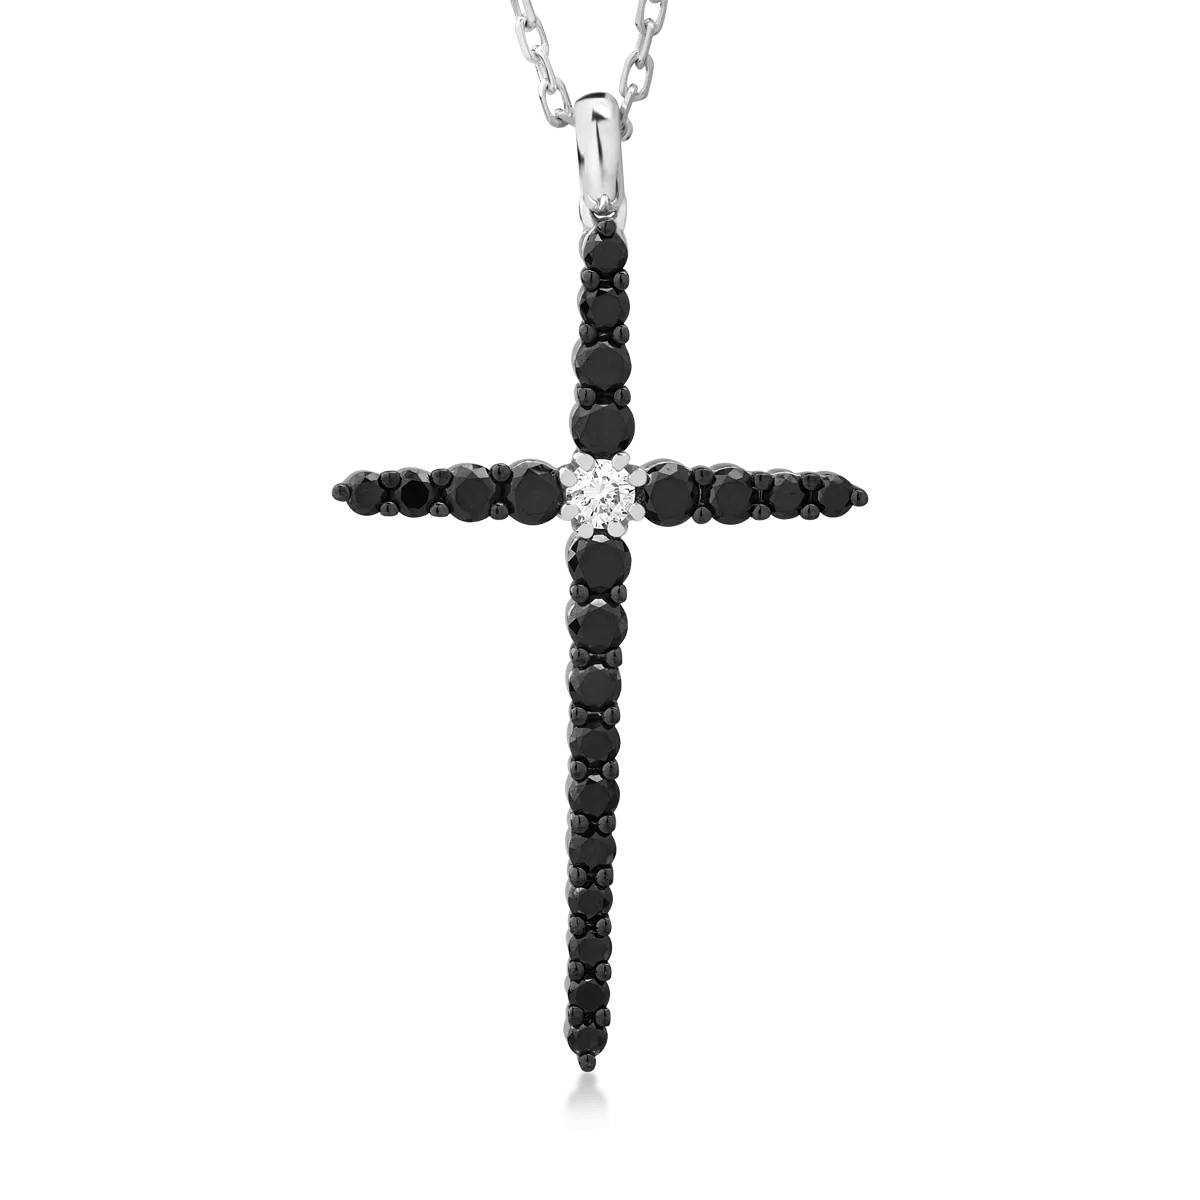 Naszyjnik w kształcie krzyża z 18K białego złota z 1ct czarnymi diamentami i bezbarwnym diamentem o masie 0.09ct